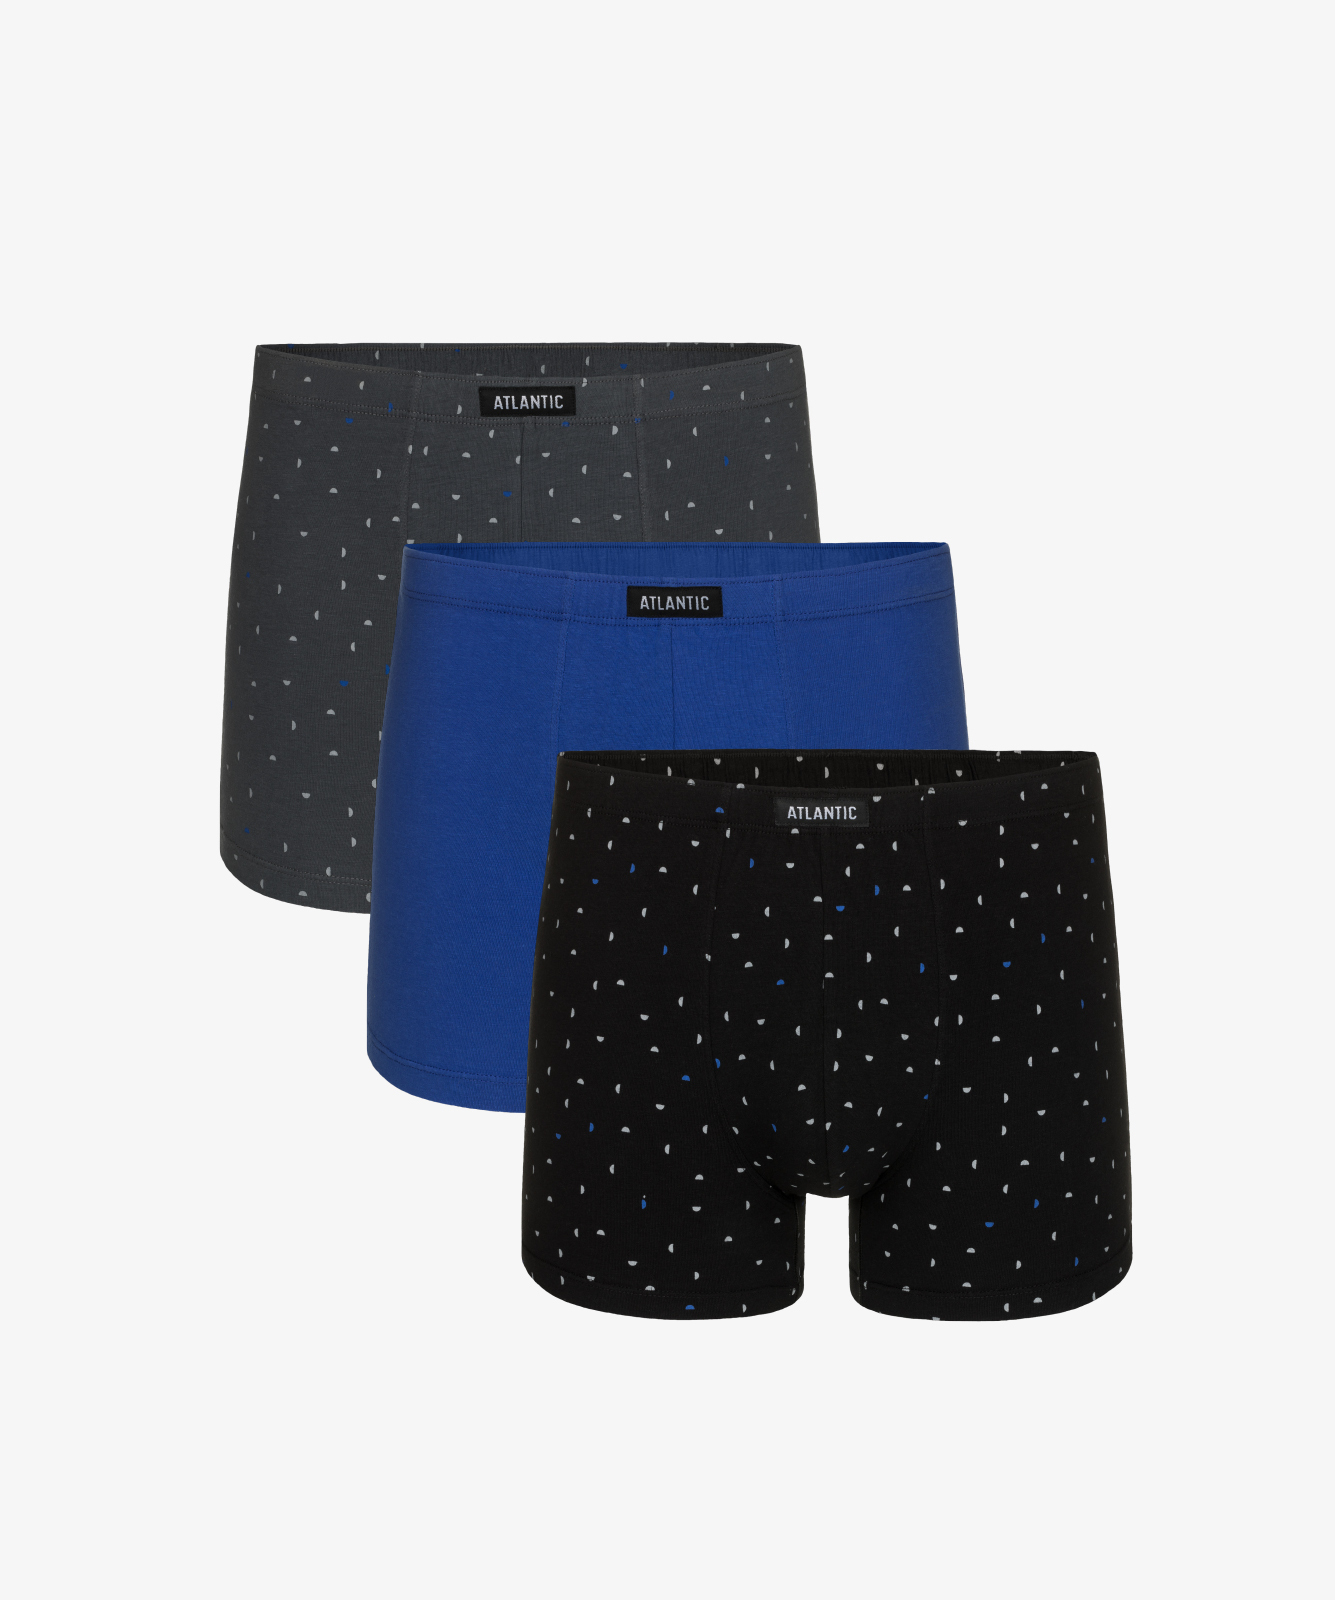 Мужские трусы шорты Atlantic, набор из 3 шт., хлопок, графит + голубые + черные, 3MH-163